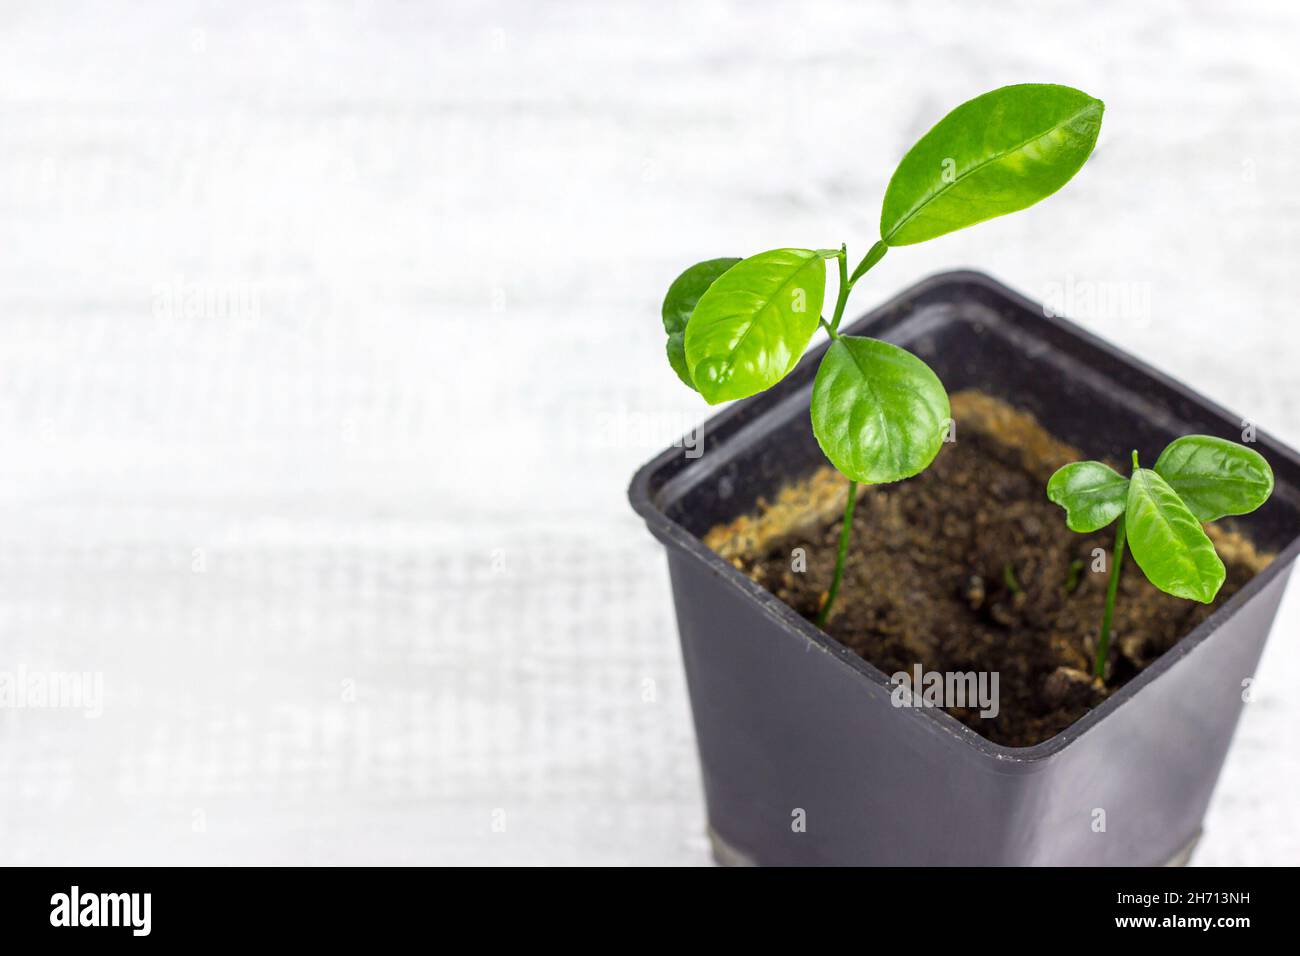 Vert frais Fortunella margarita (Citrus reticulata) plante de petits semis dans le pot de fleurs noires sur fond clair avec espace de copie. Banque D'Images